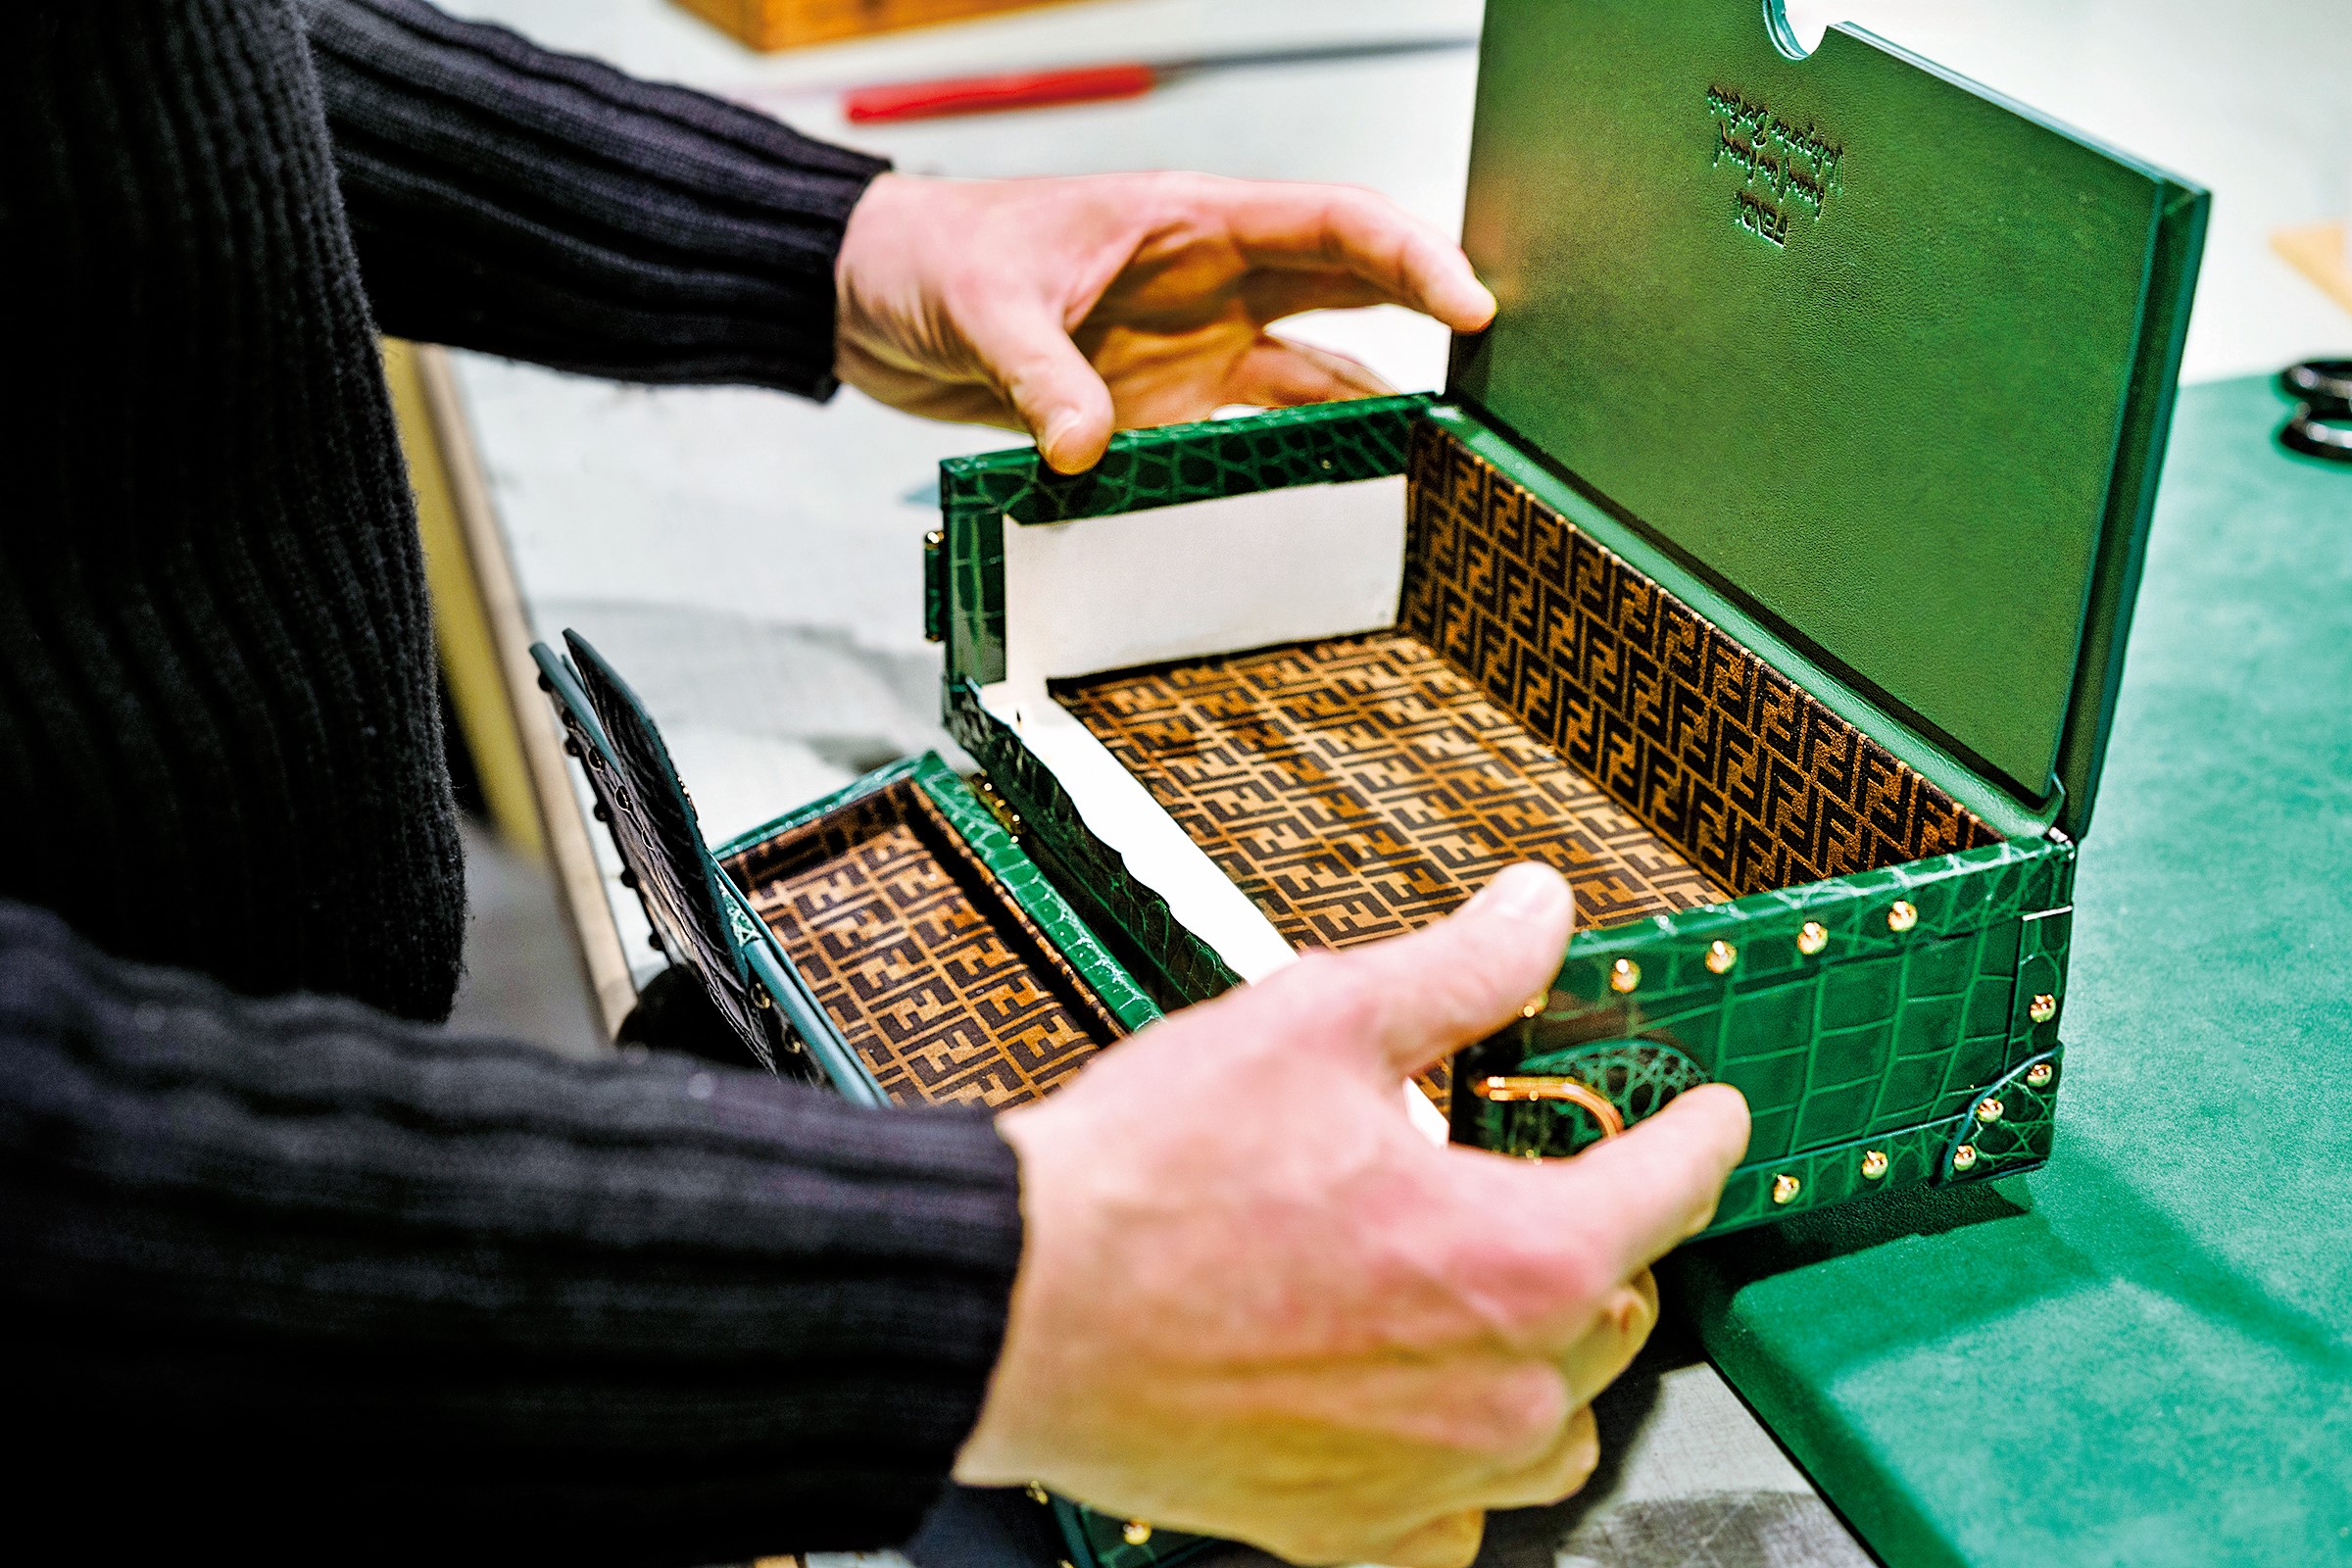 身居現代皮革工藝龍頭的行李箱大師 Bertoni Valigeria，Baguette 包在他手中被改造成微型行李箱，硬挺翡翠綠外殼中以匠心巧設 3 個抽屜，襯墊著柔軟的 FF 麂皮布，兼顧奢華外觀與機能內在。